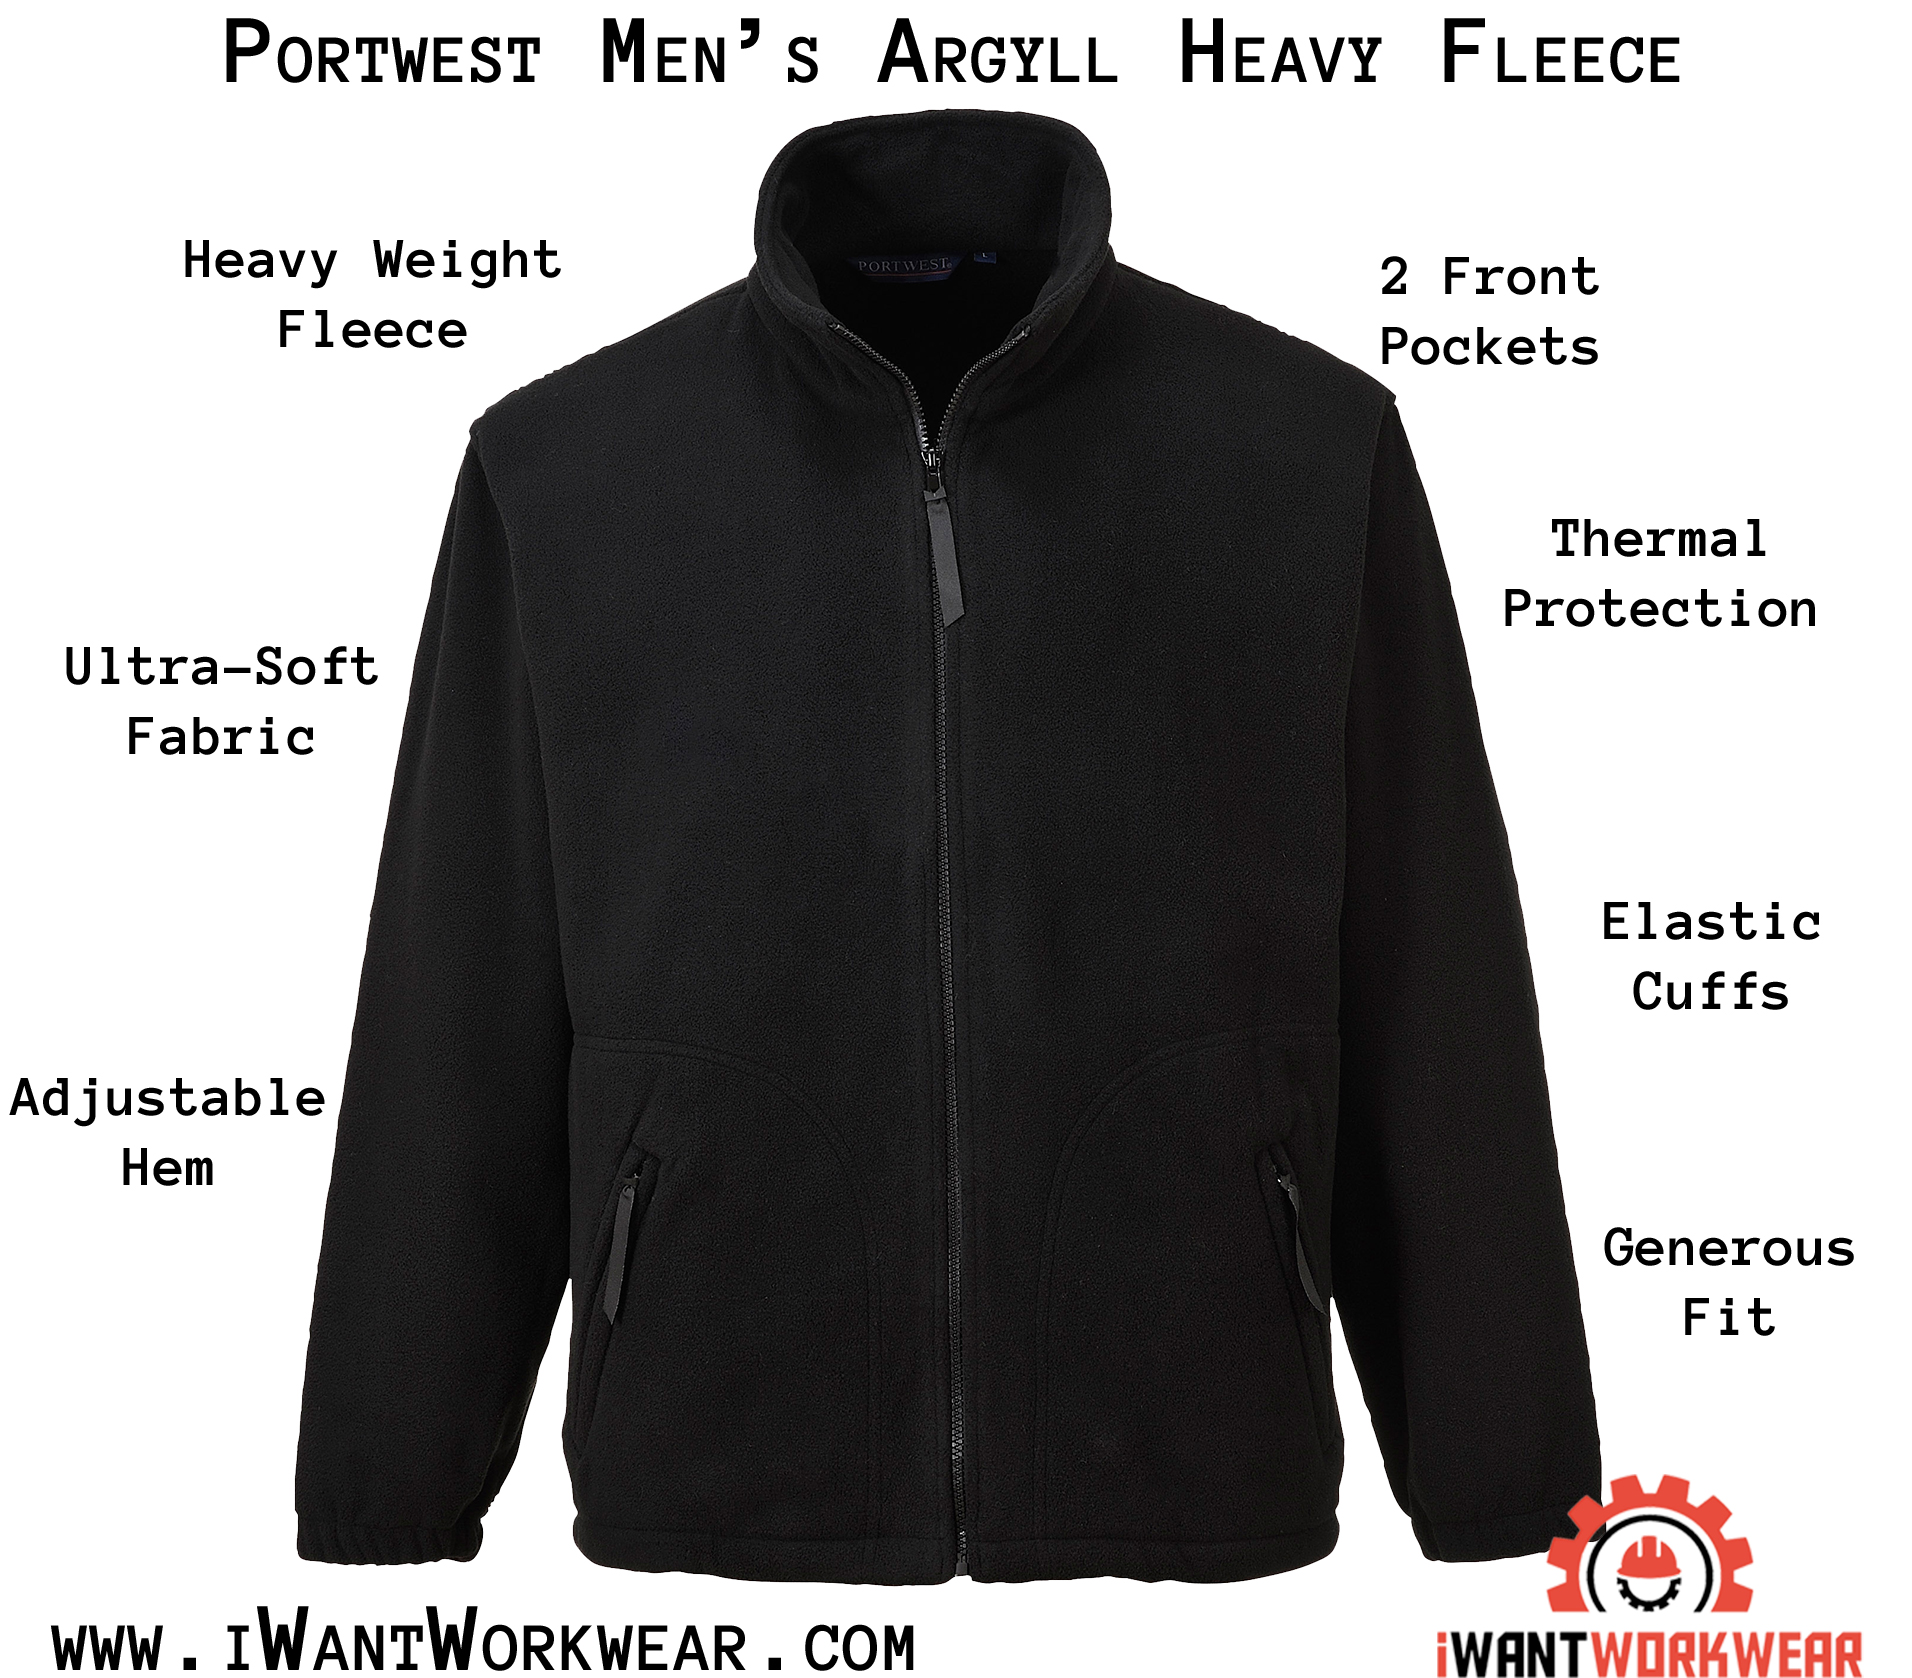 personeelszaken komedie Treble Portwest US400 Argyll Heavy Fleece Jacket - iWantWorkwear